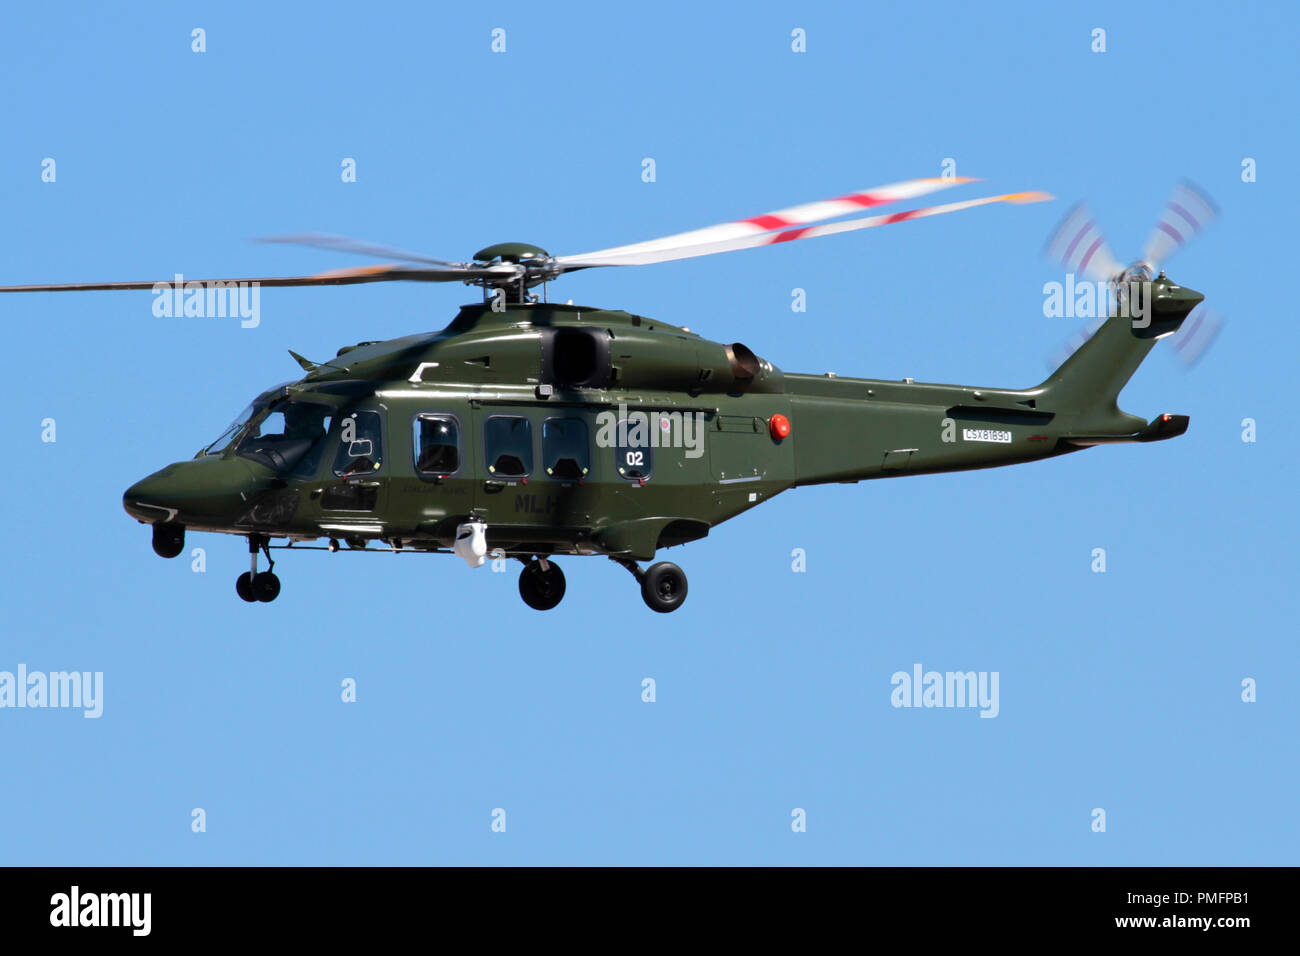 (Leonardo) AgustaWestland AW149 helicóptero militar de la Fuerza Aérea Italiana volando en el cielo Foto de stock